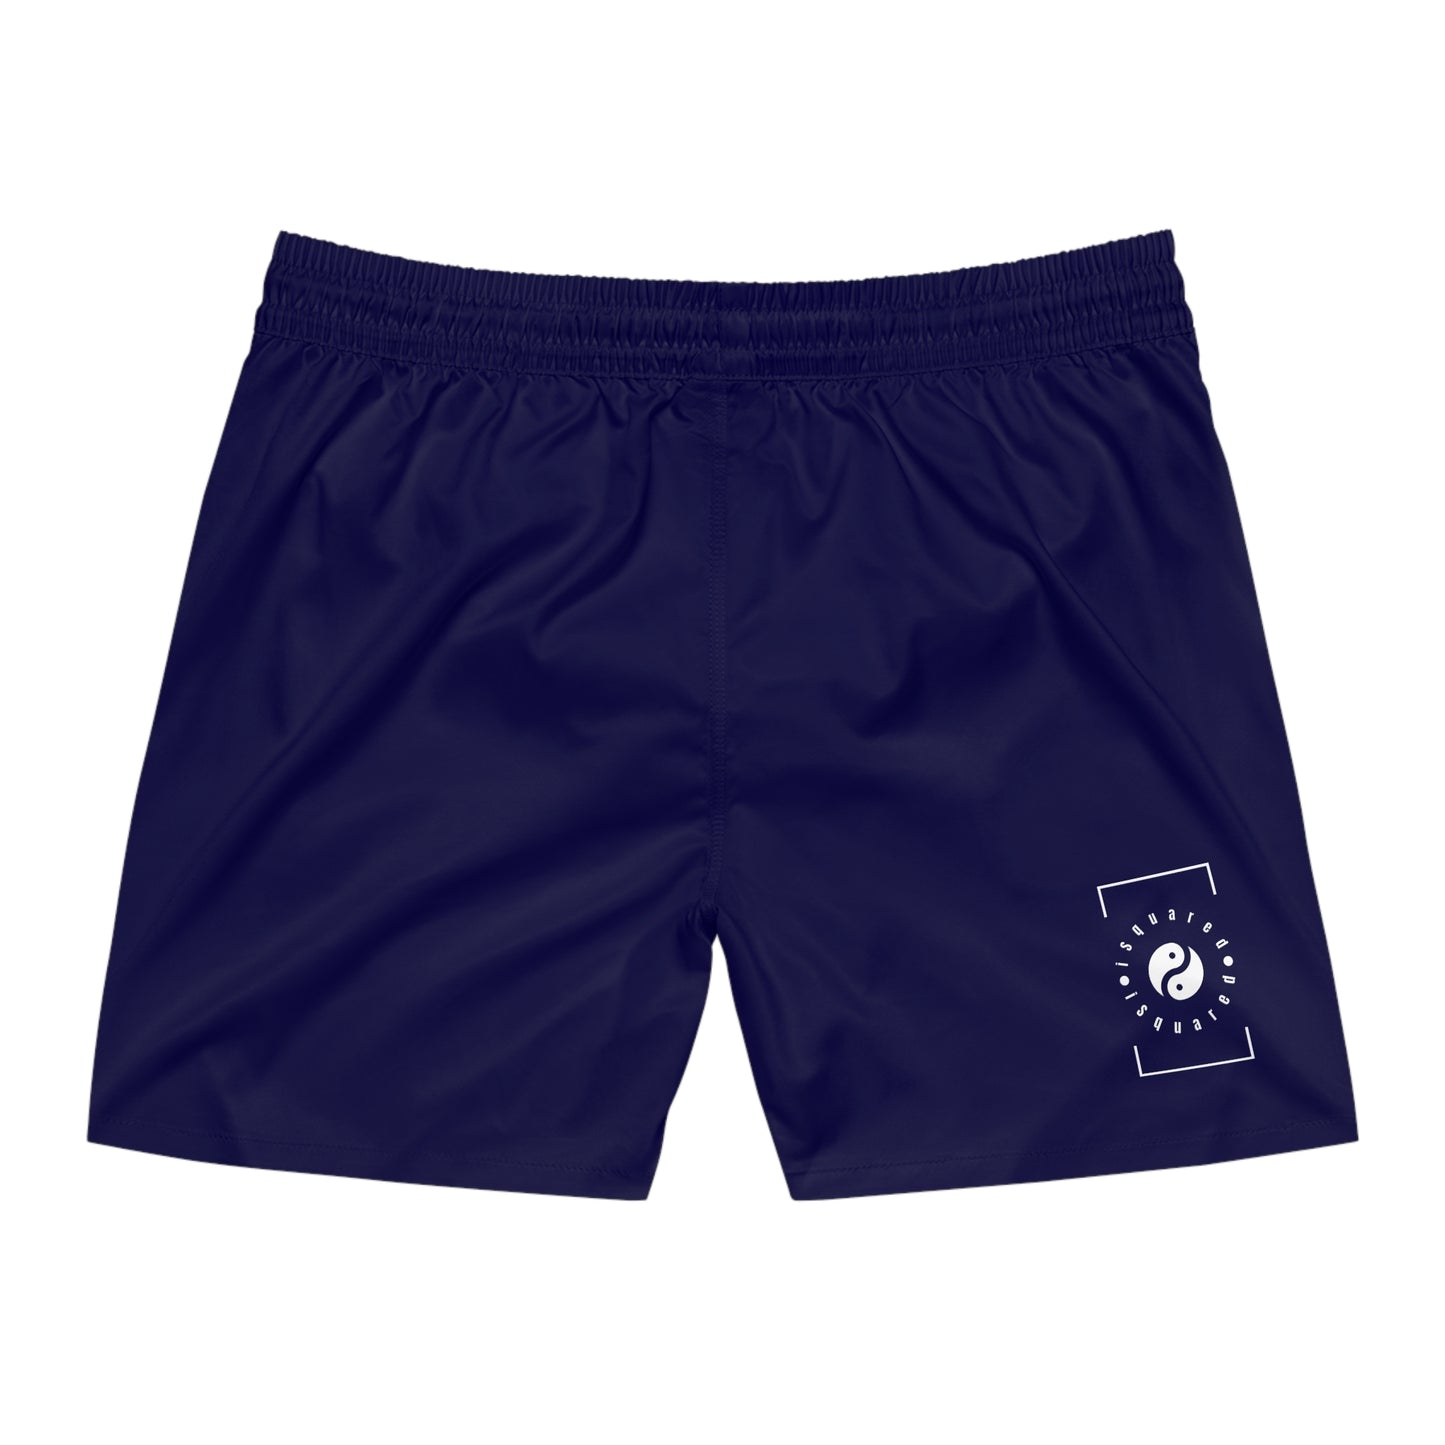 Royal Blue - Swim Shorts (Solid Color) for Men